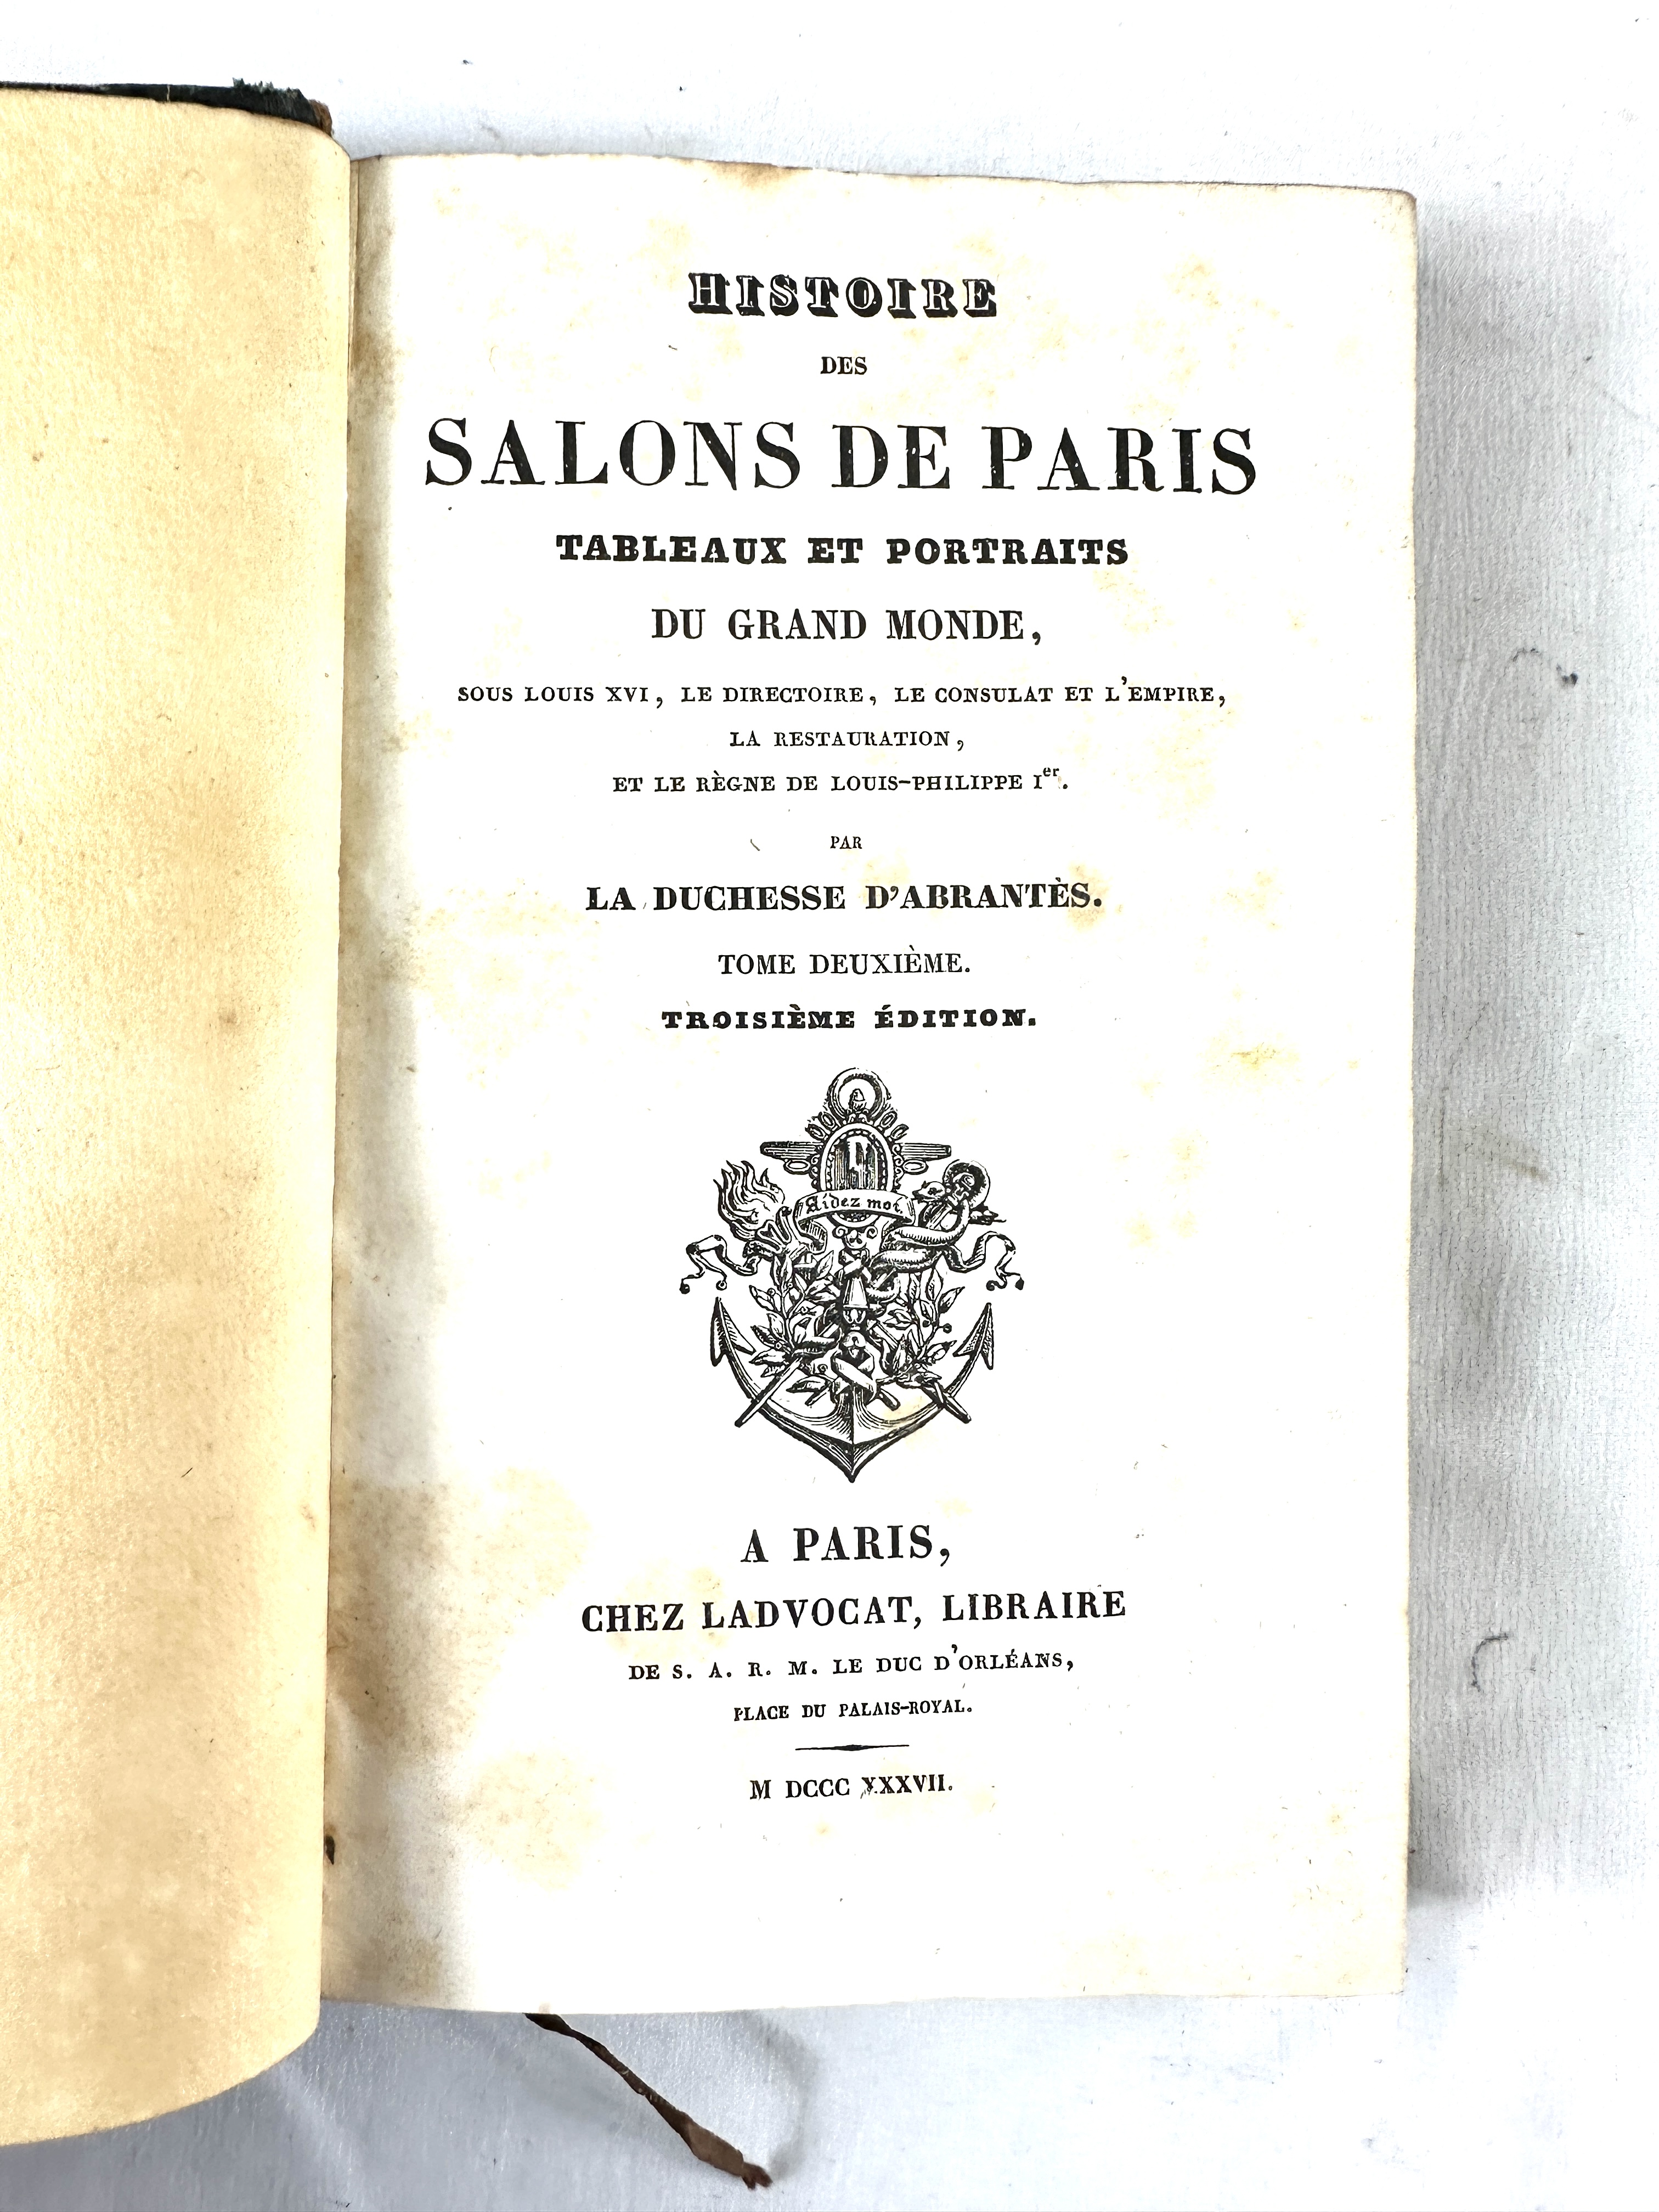 Histoire des Salons de Paris, published in six quarter bound volumes, Paris 1837. - Image 4 of 4